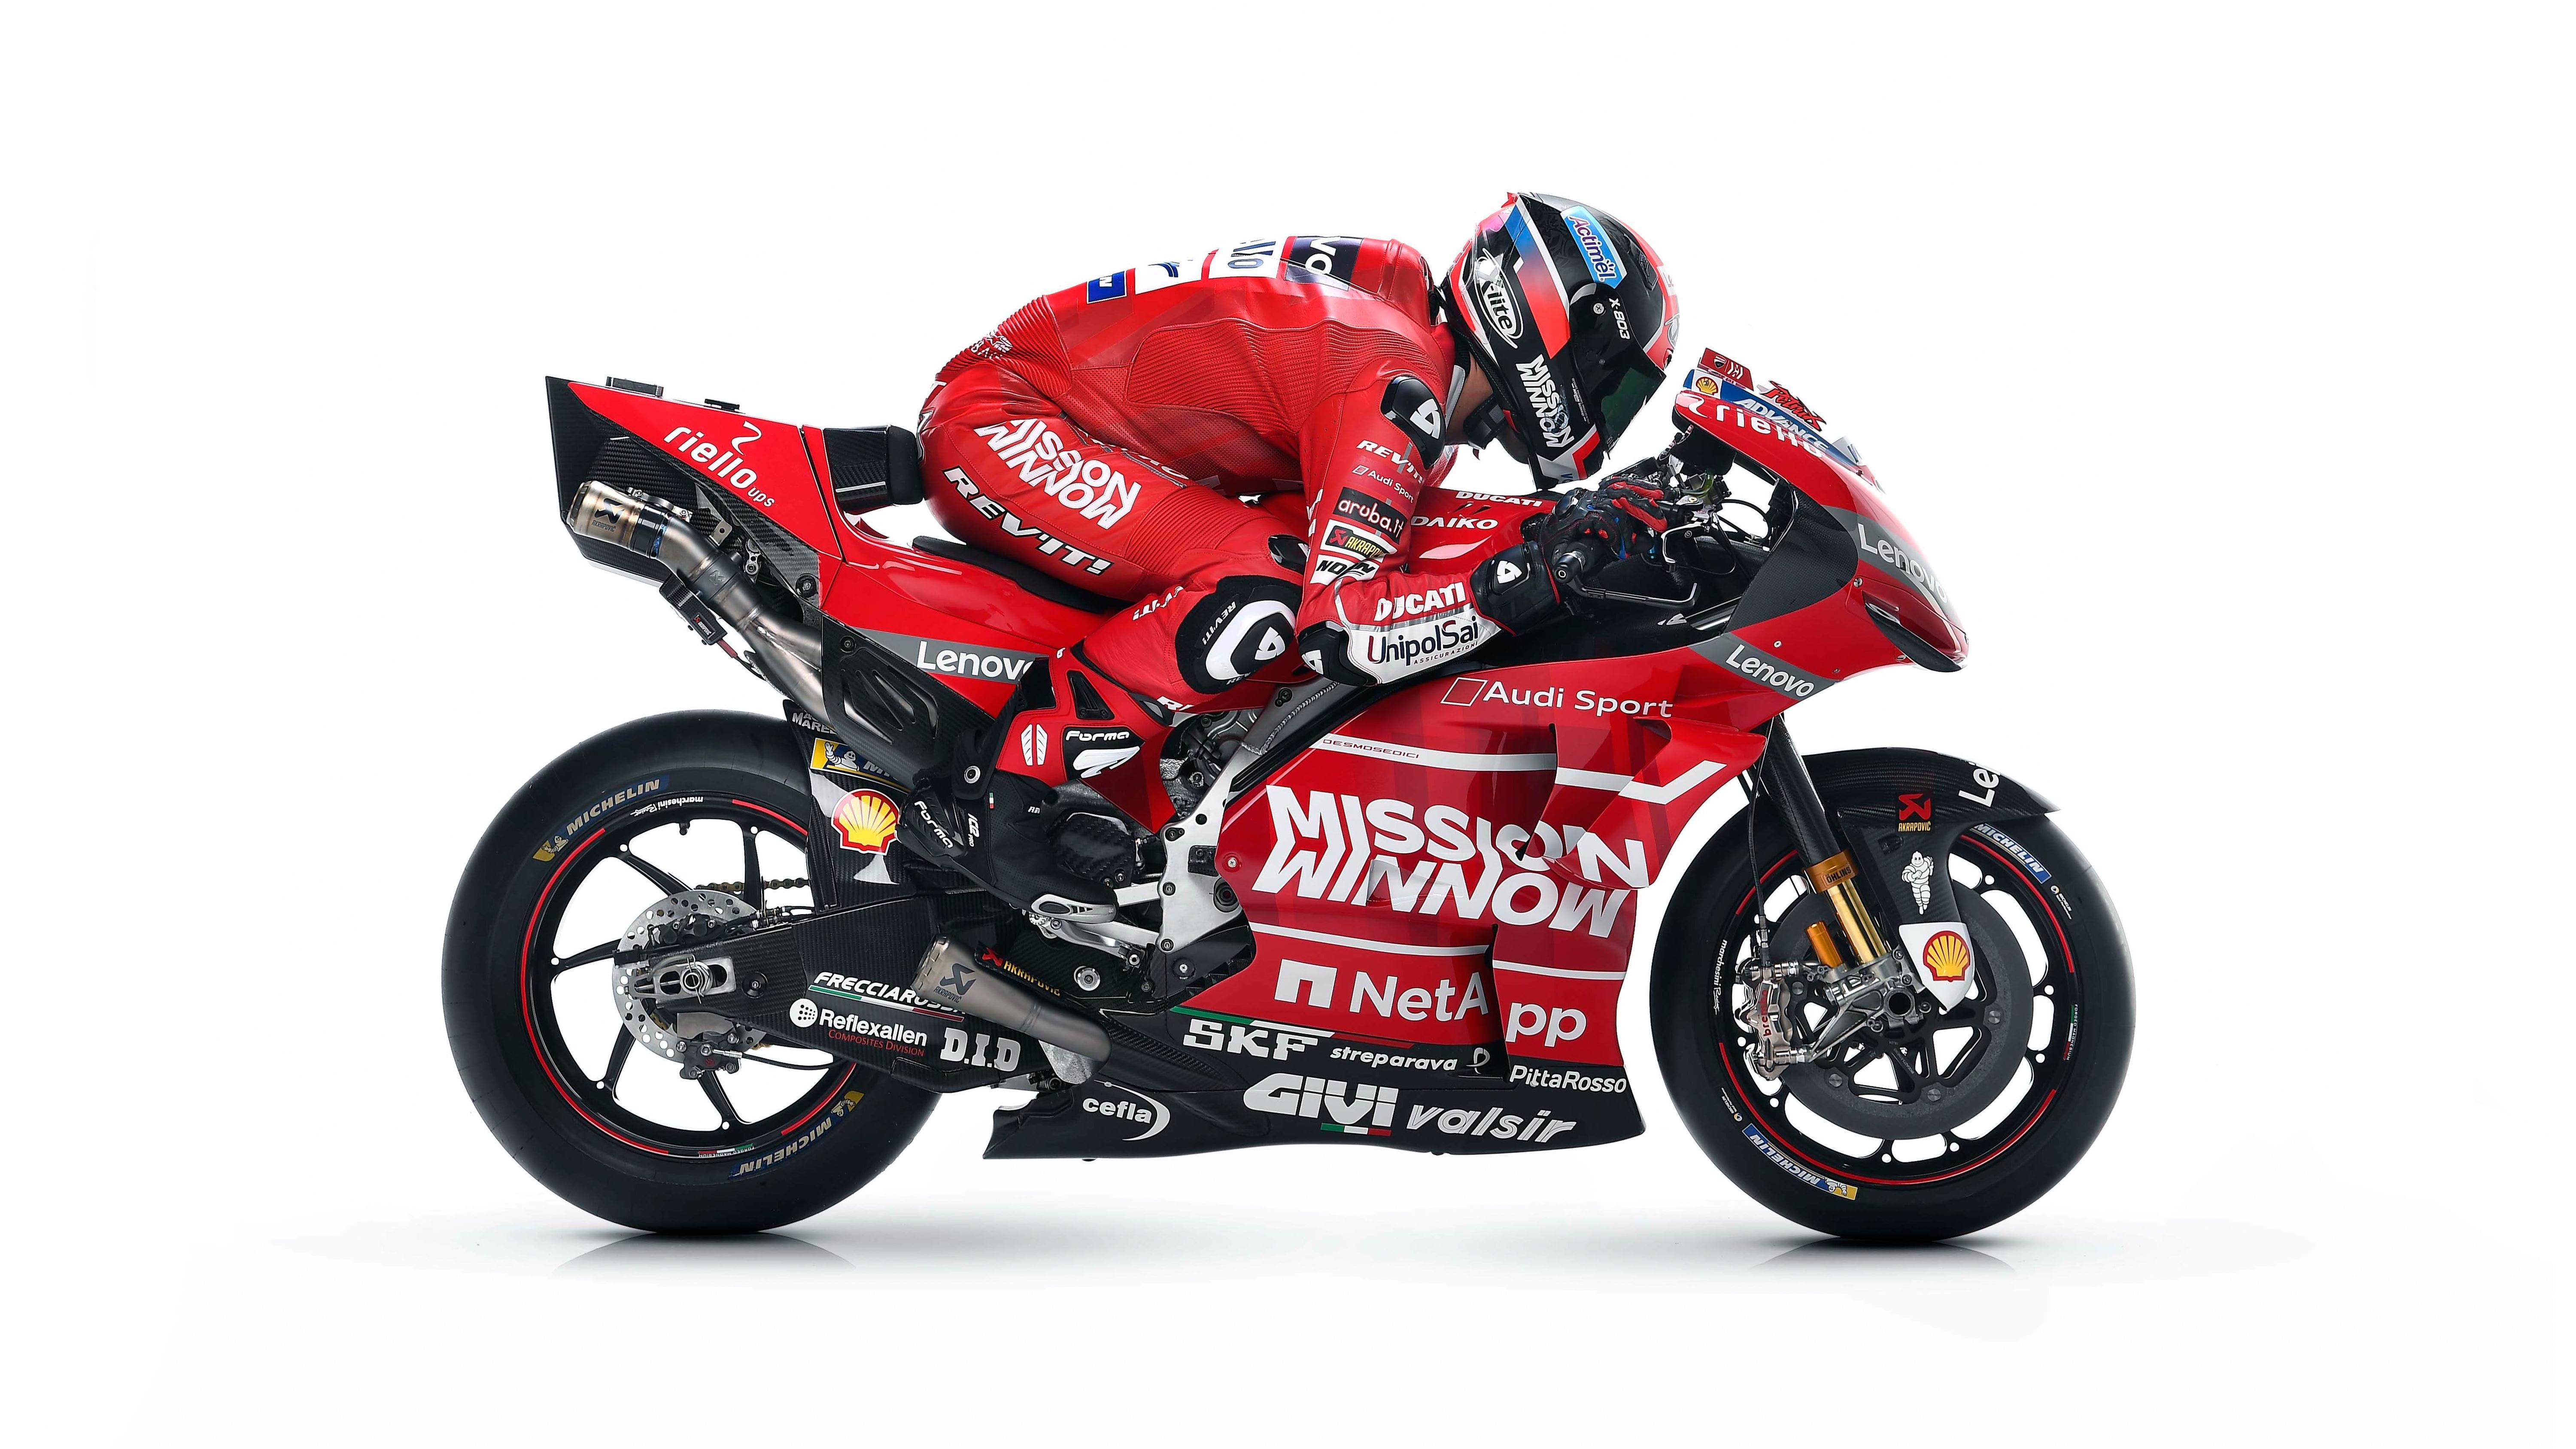 Ducati Motogp Wallpapers Top Free Ducati Motogp Backgrounds Wallpaperaccess